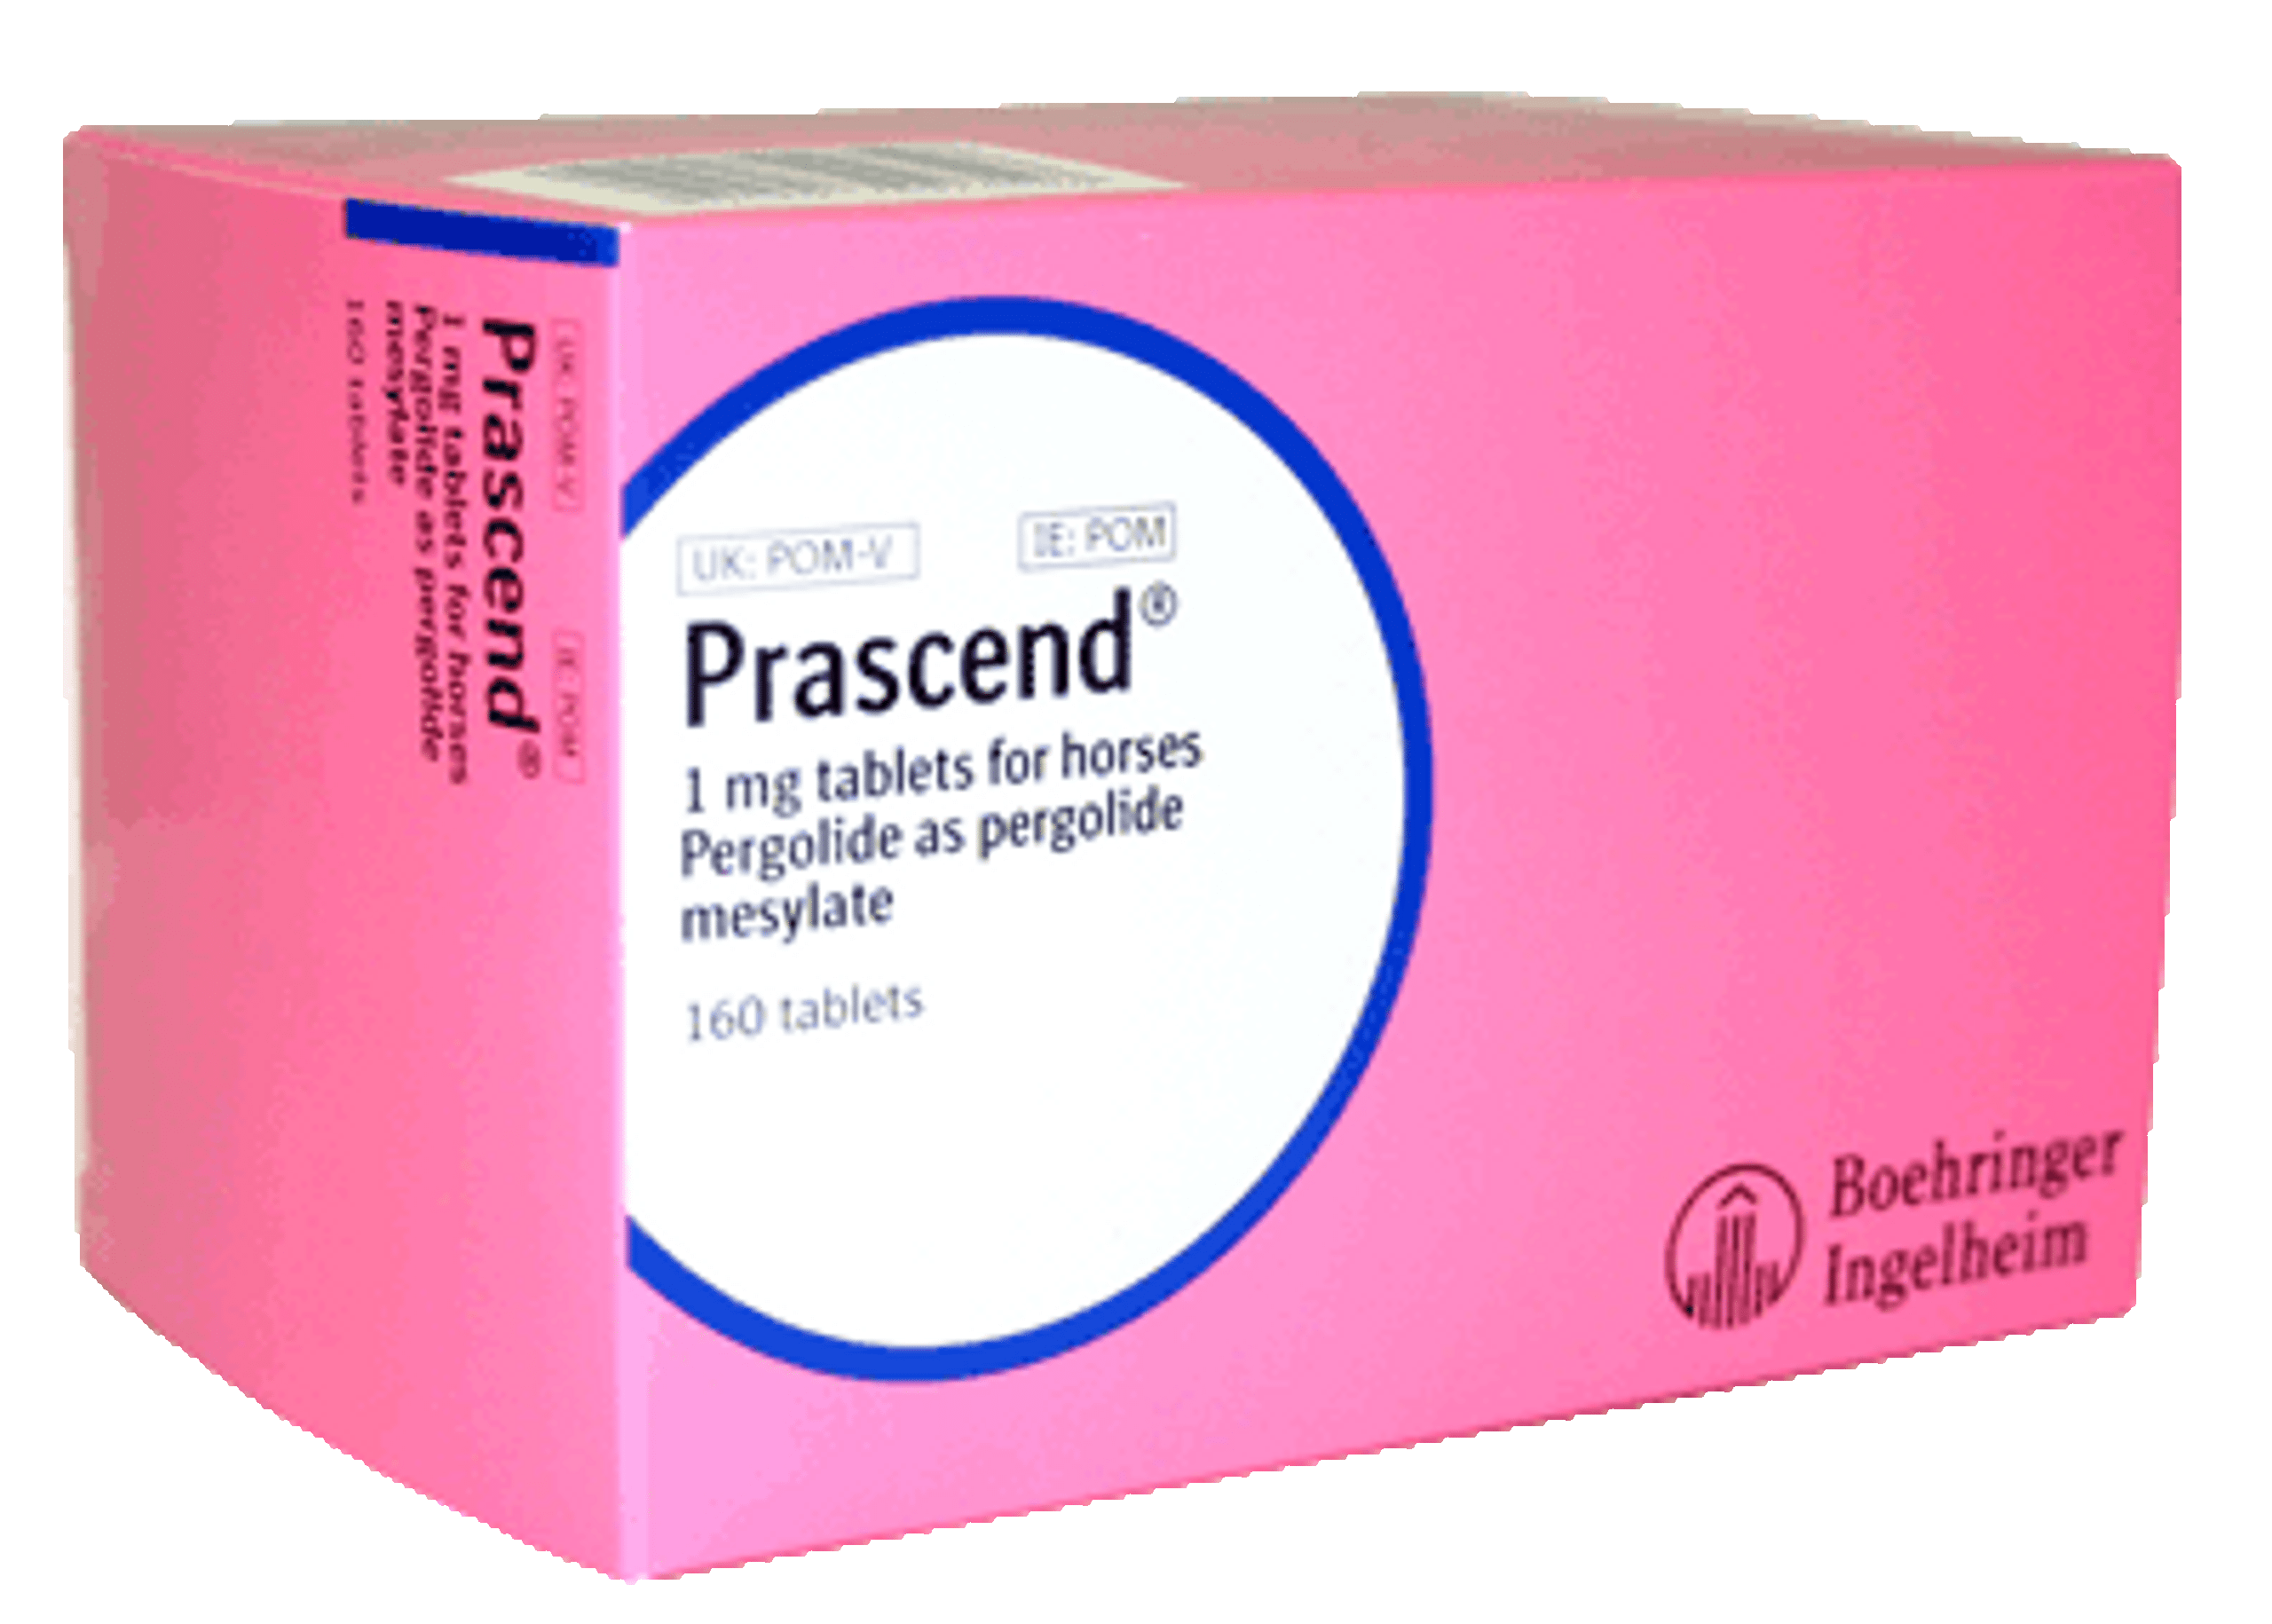 prascend-1mg-tablets-for-horses-pom-hyperdrug